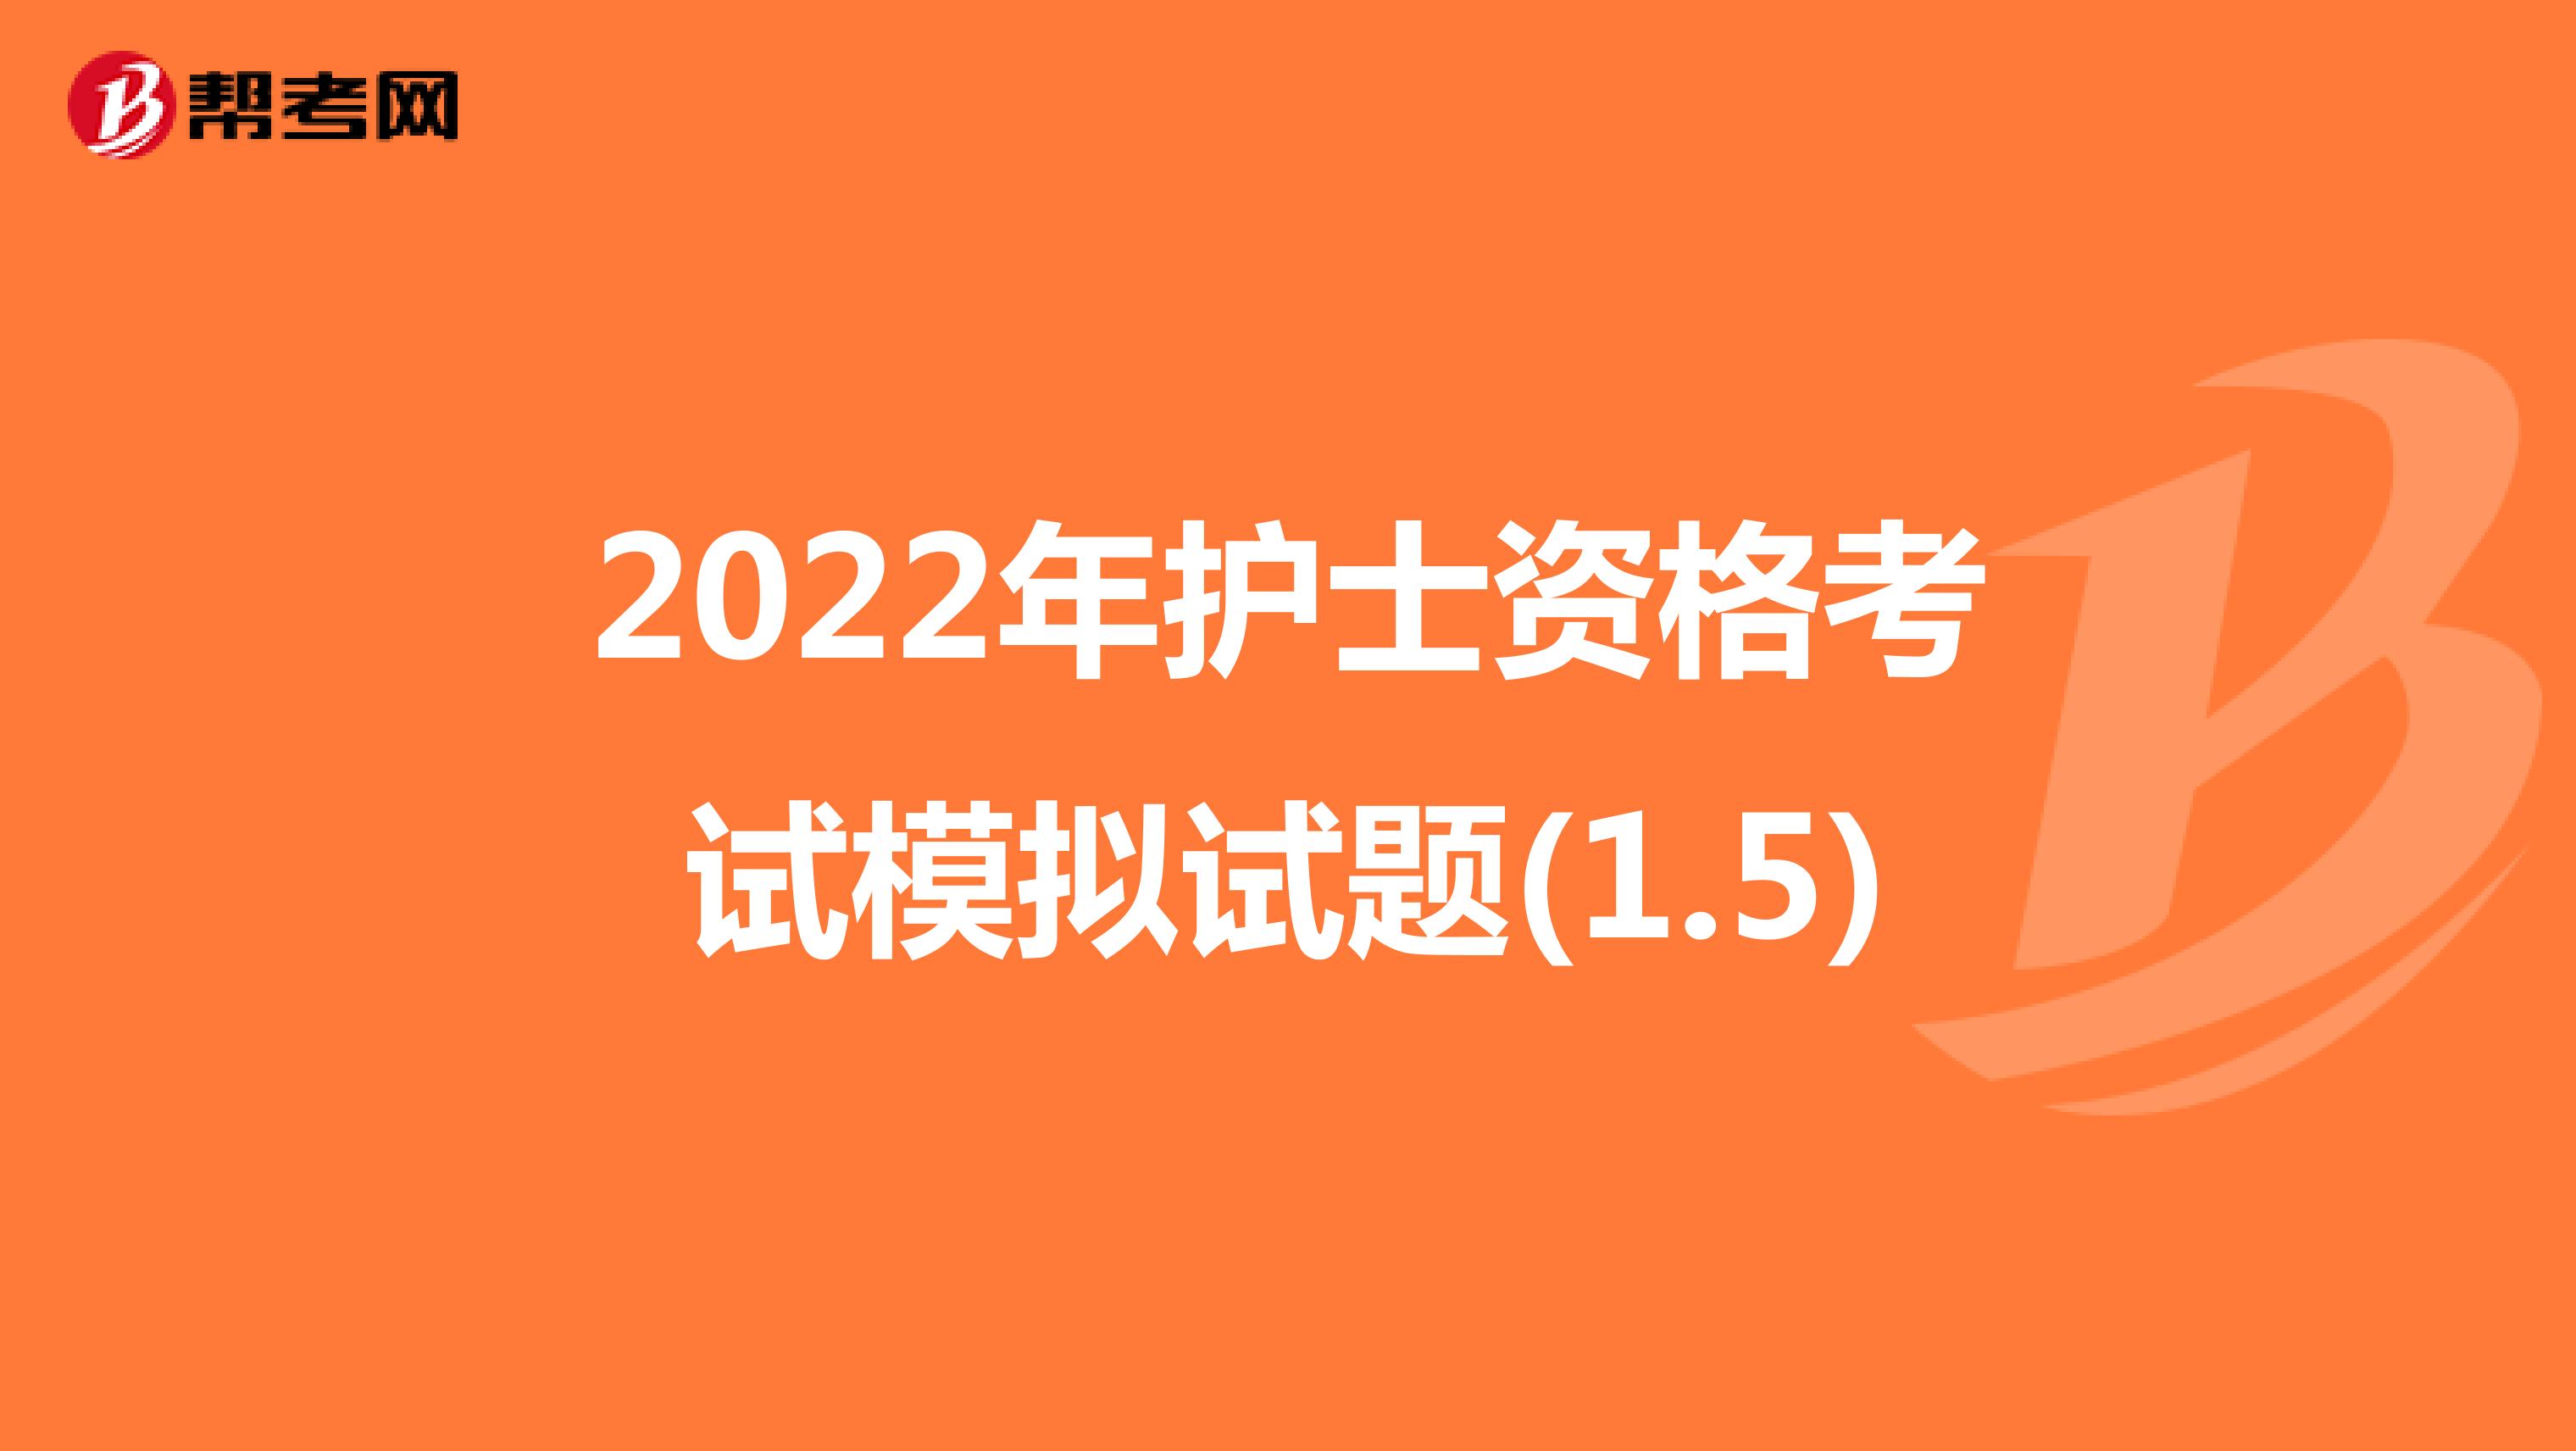 2022年护士资格考试模拟试题(1.5)